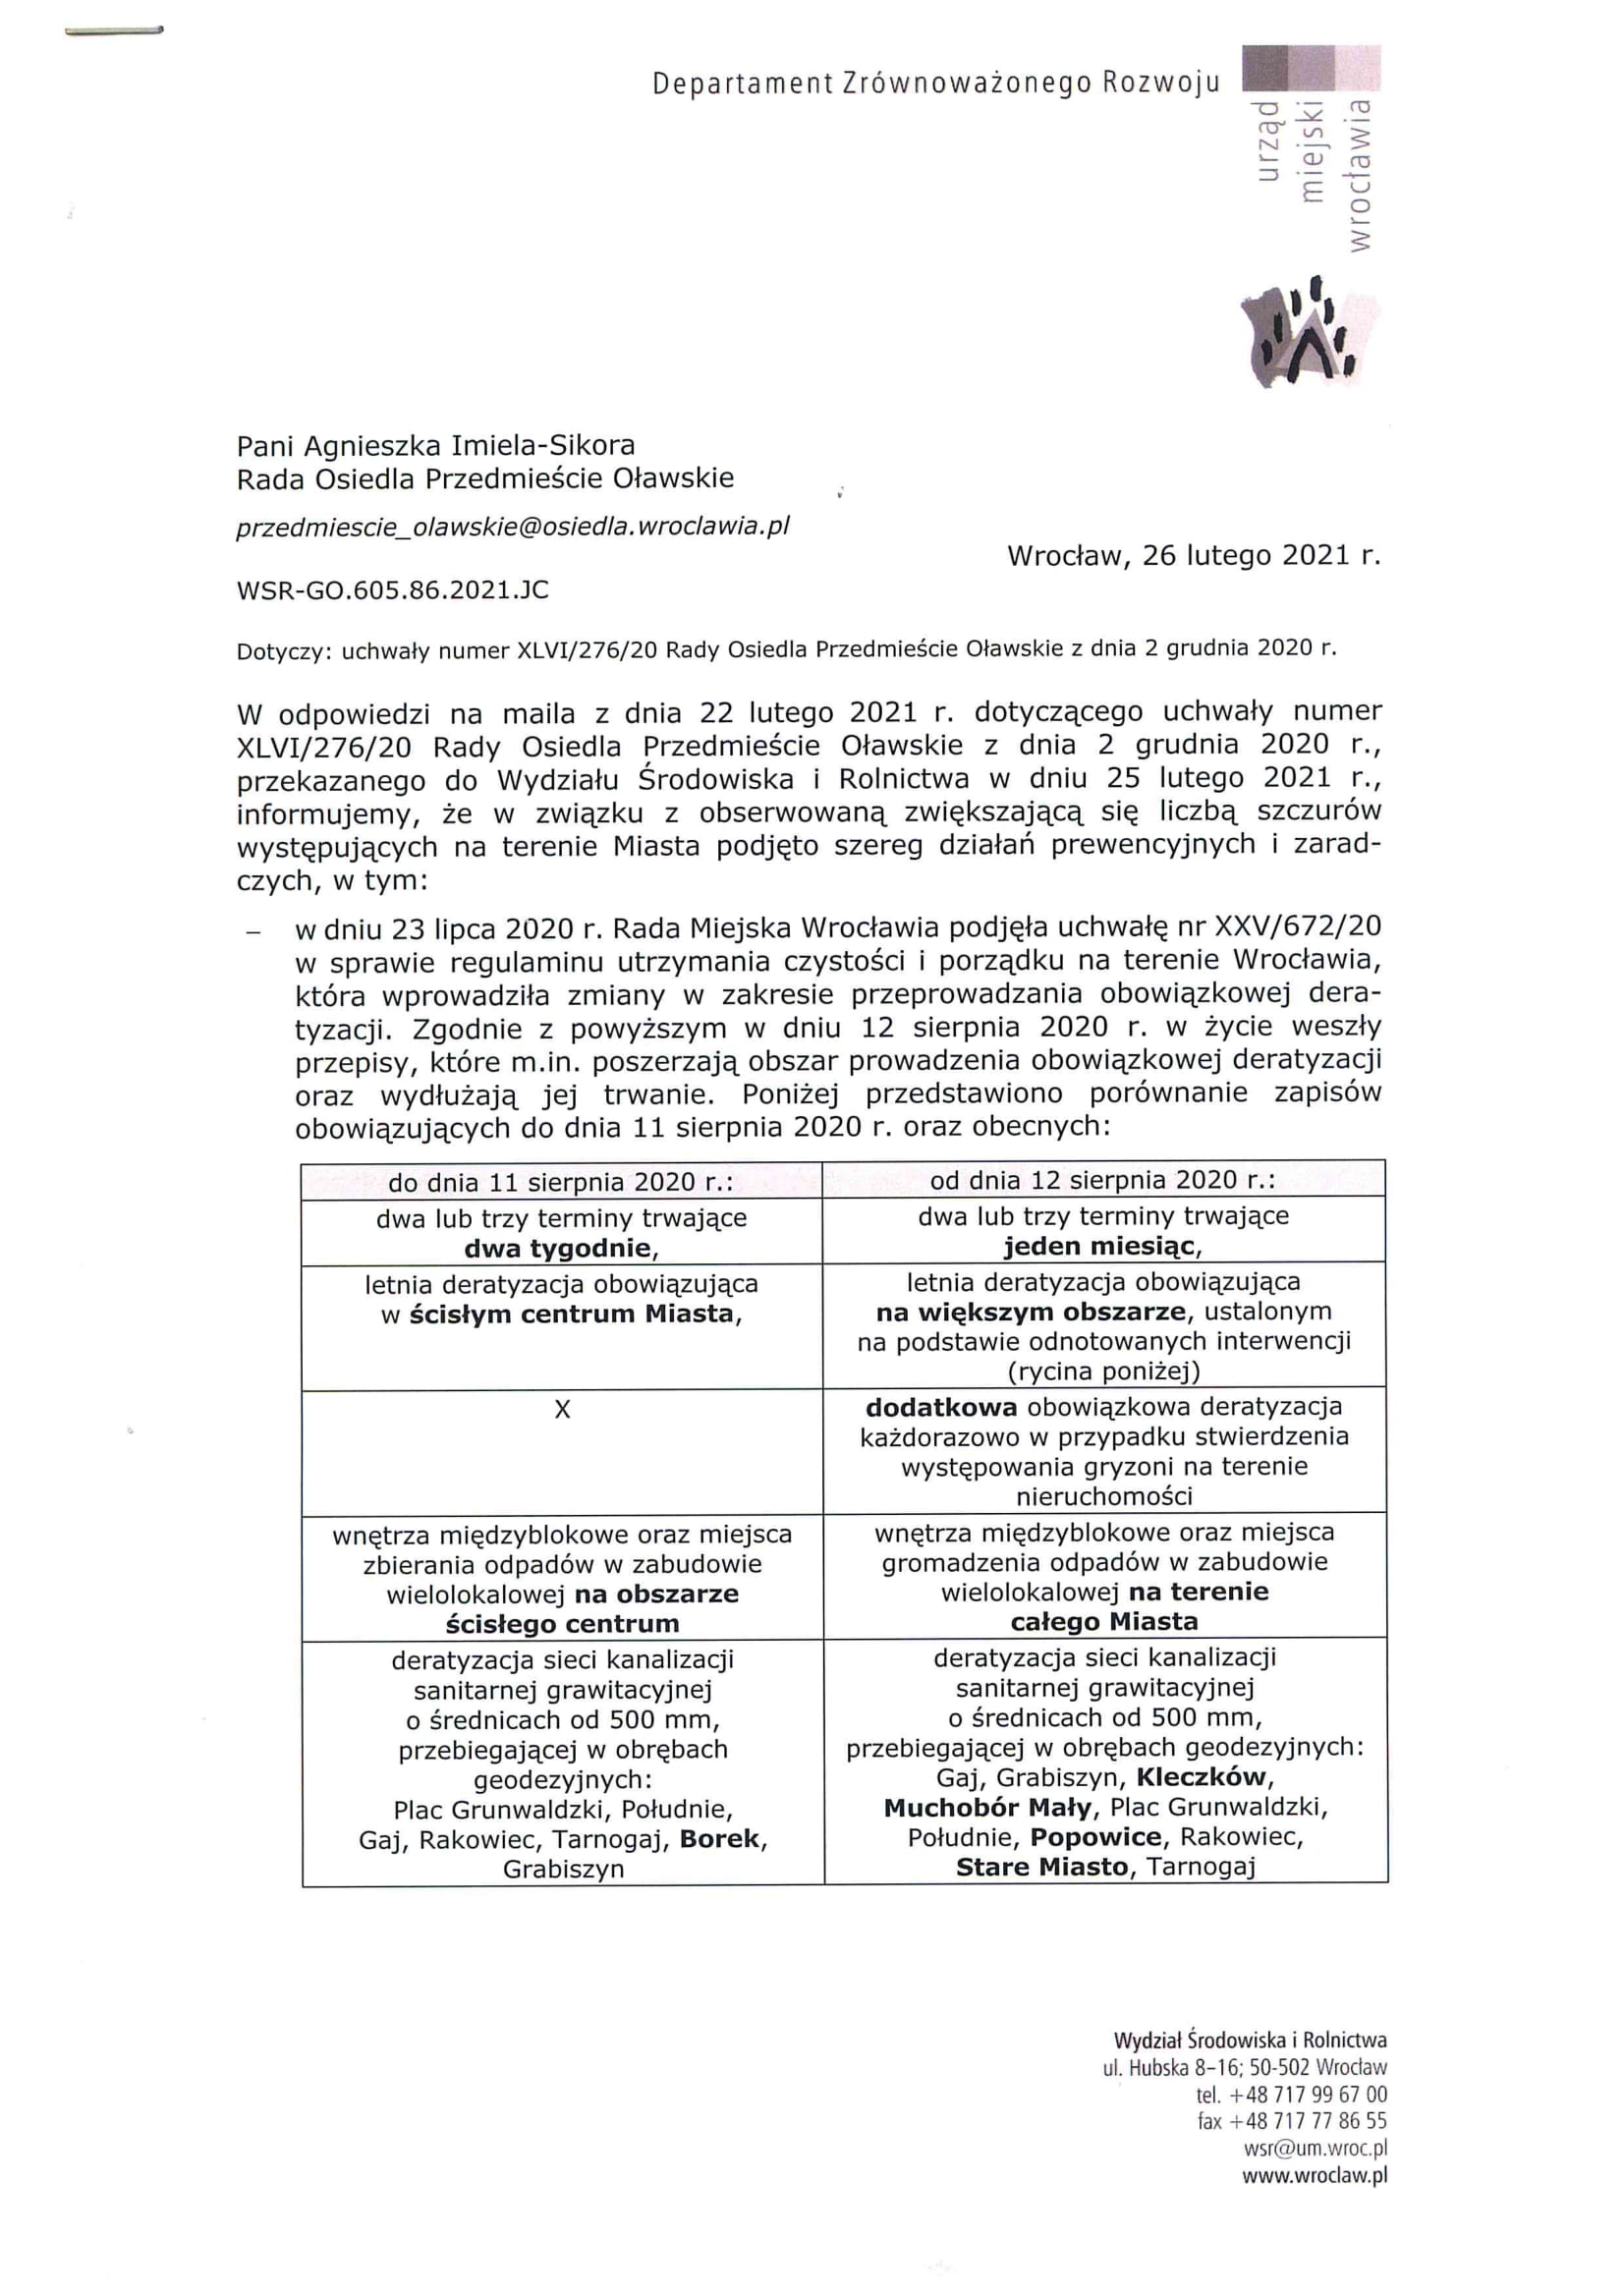 Pismo Wydziału Środowiska i Rolnictwa Urzędu Miejskiego Wrocławia z dnia 26.02.2021 r. nr WSR GO.605.86.2021.JC 1